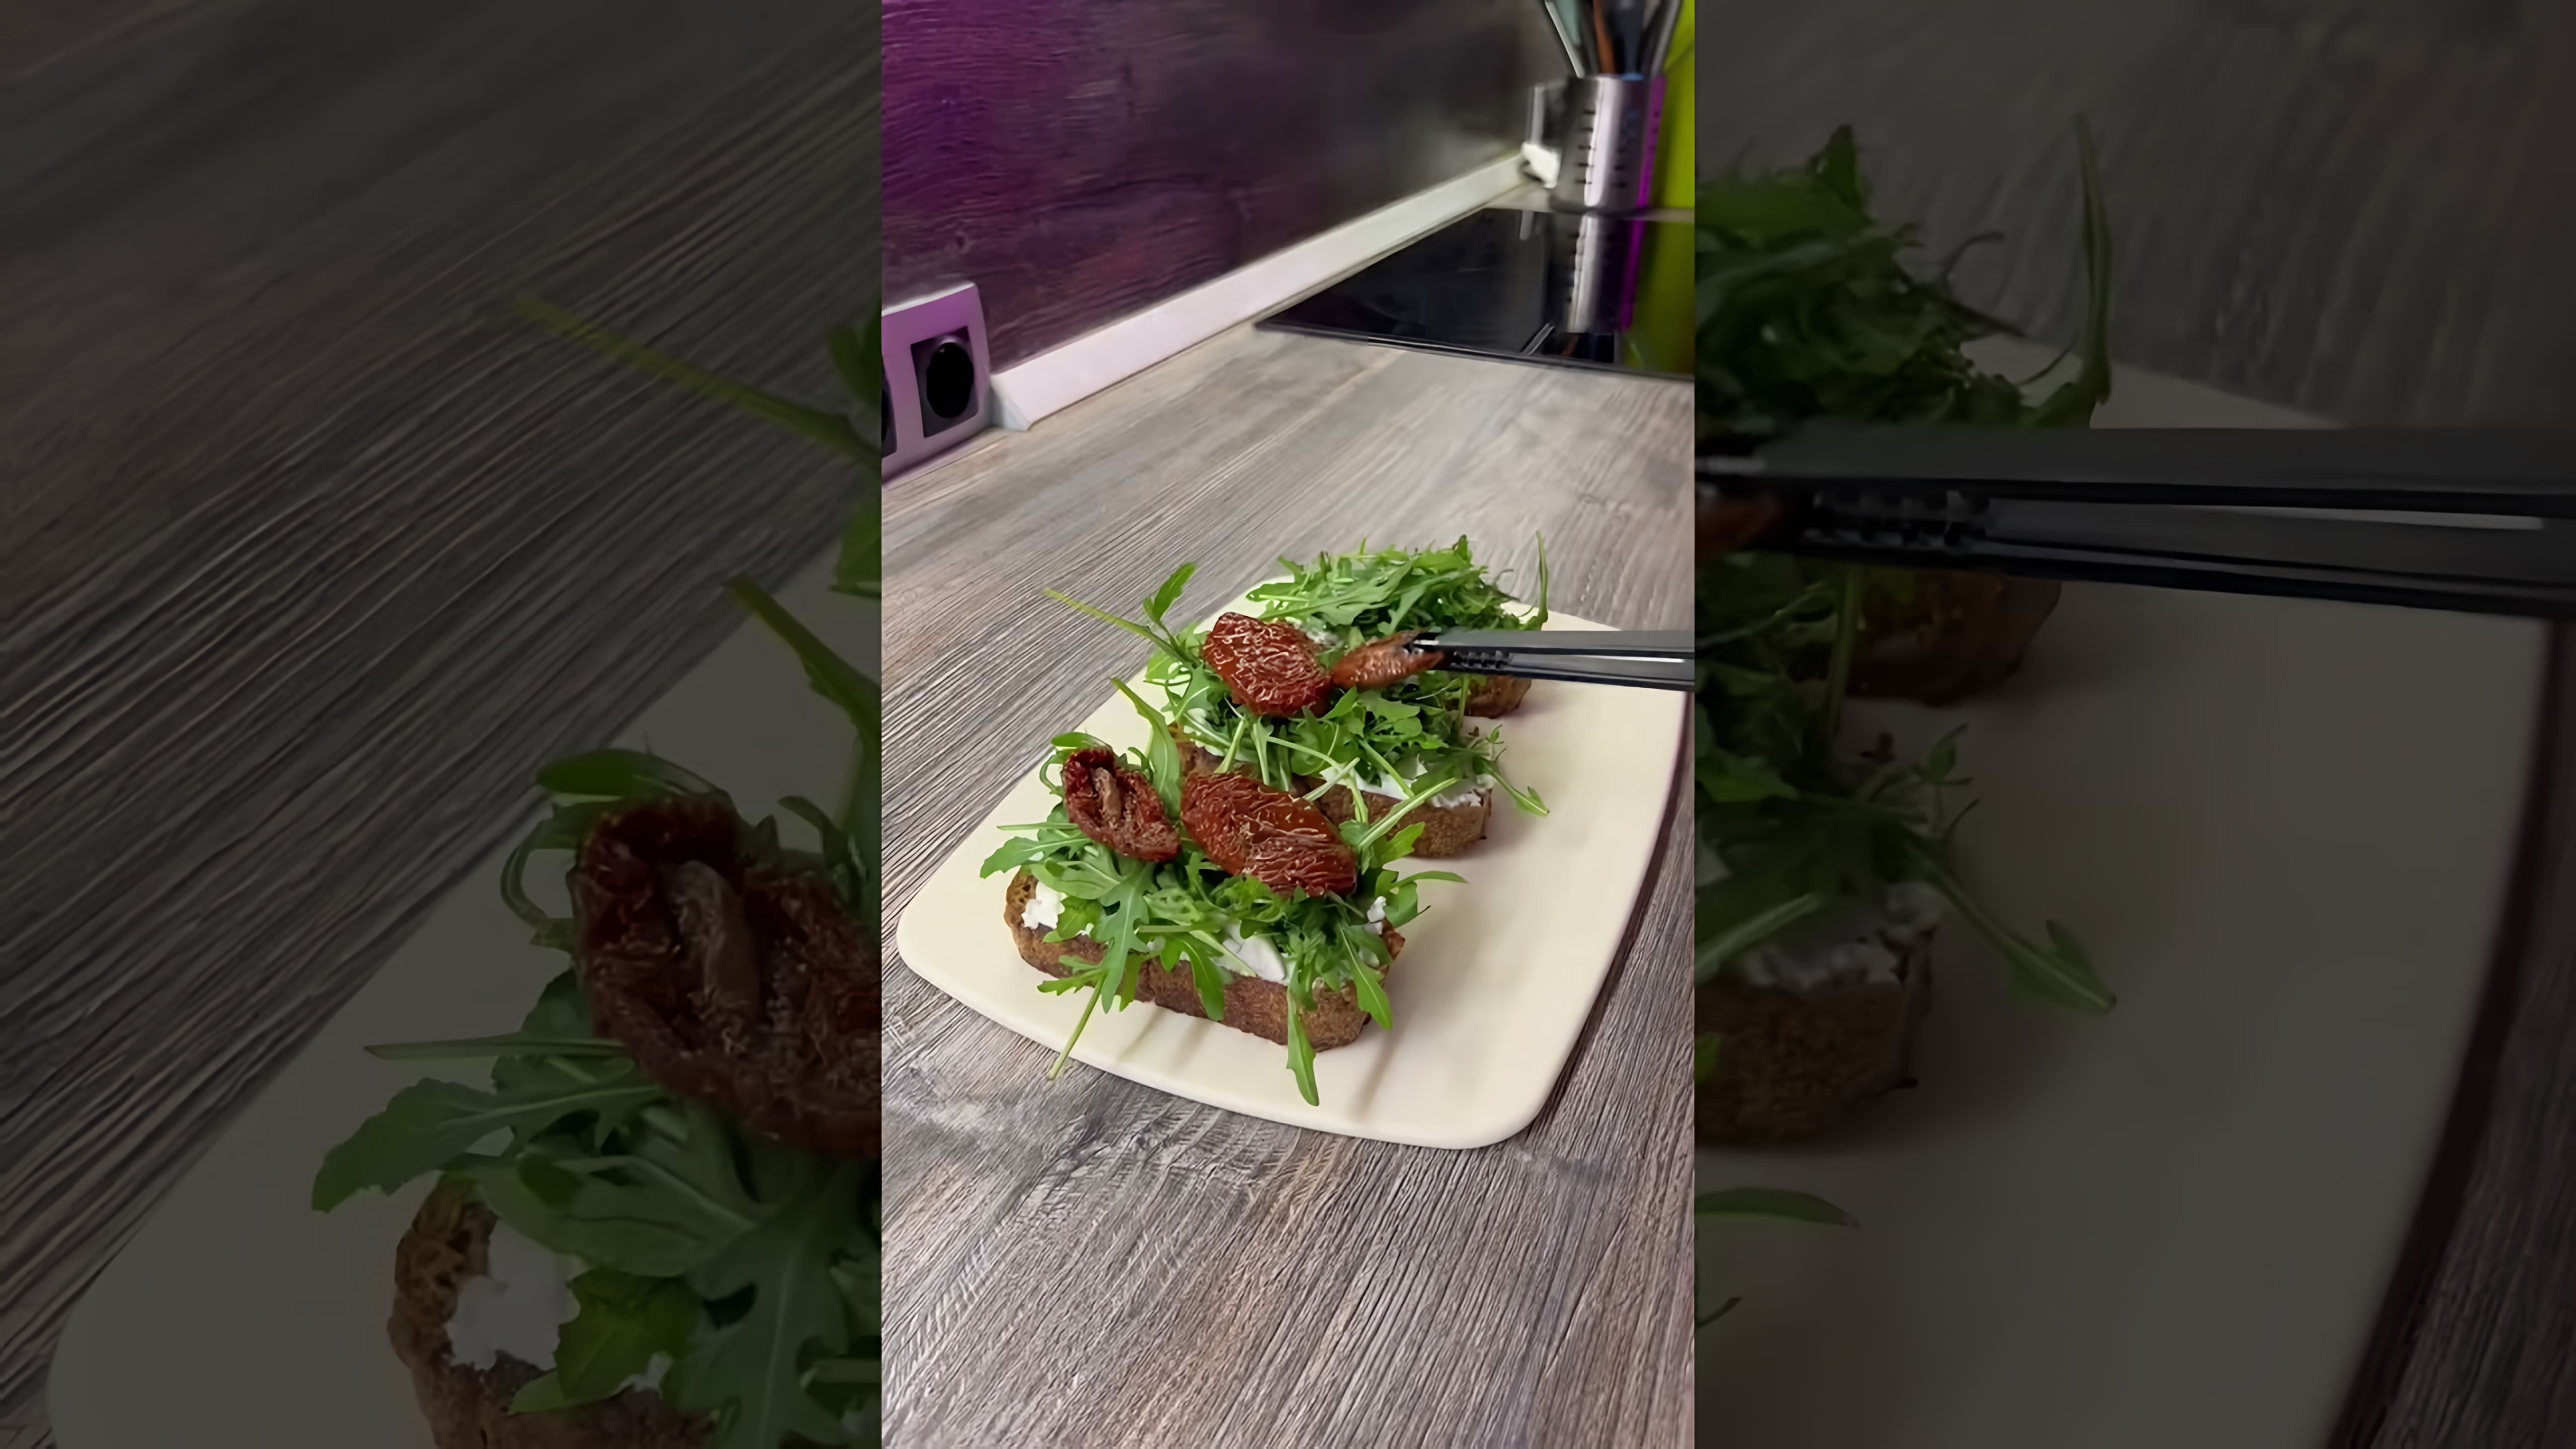 В этом видео демонстрируется процесс приготовления закуски ресторанного формата - брускетты